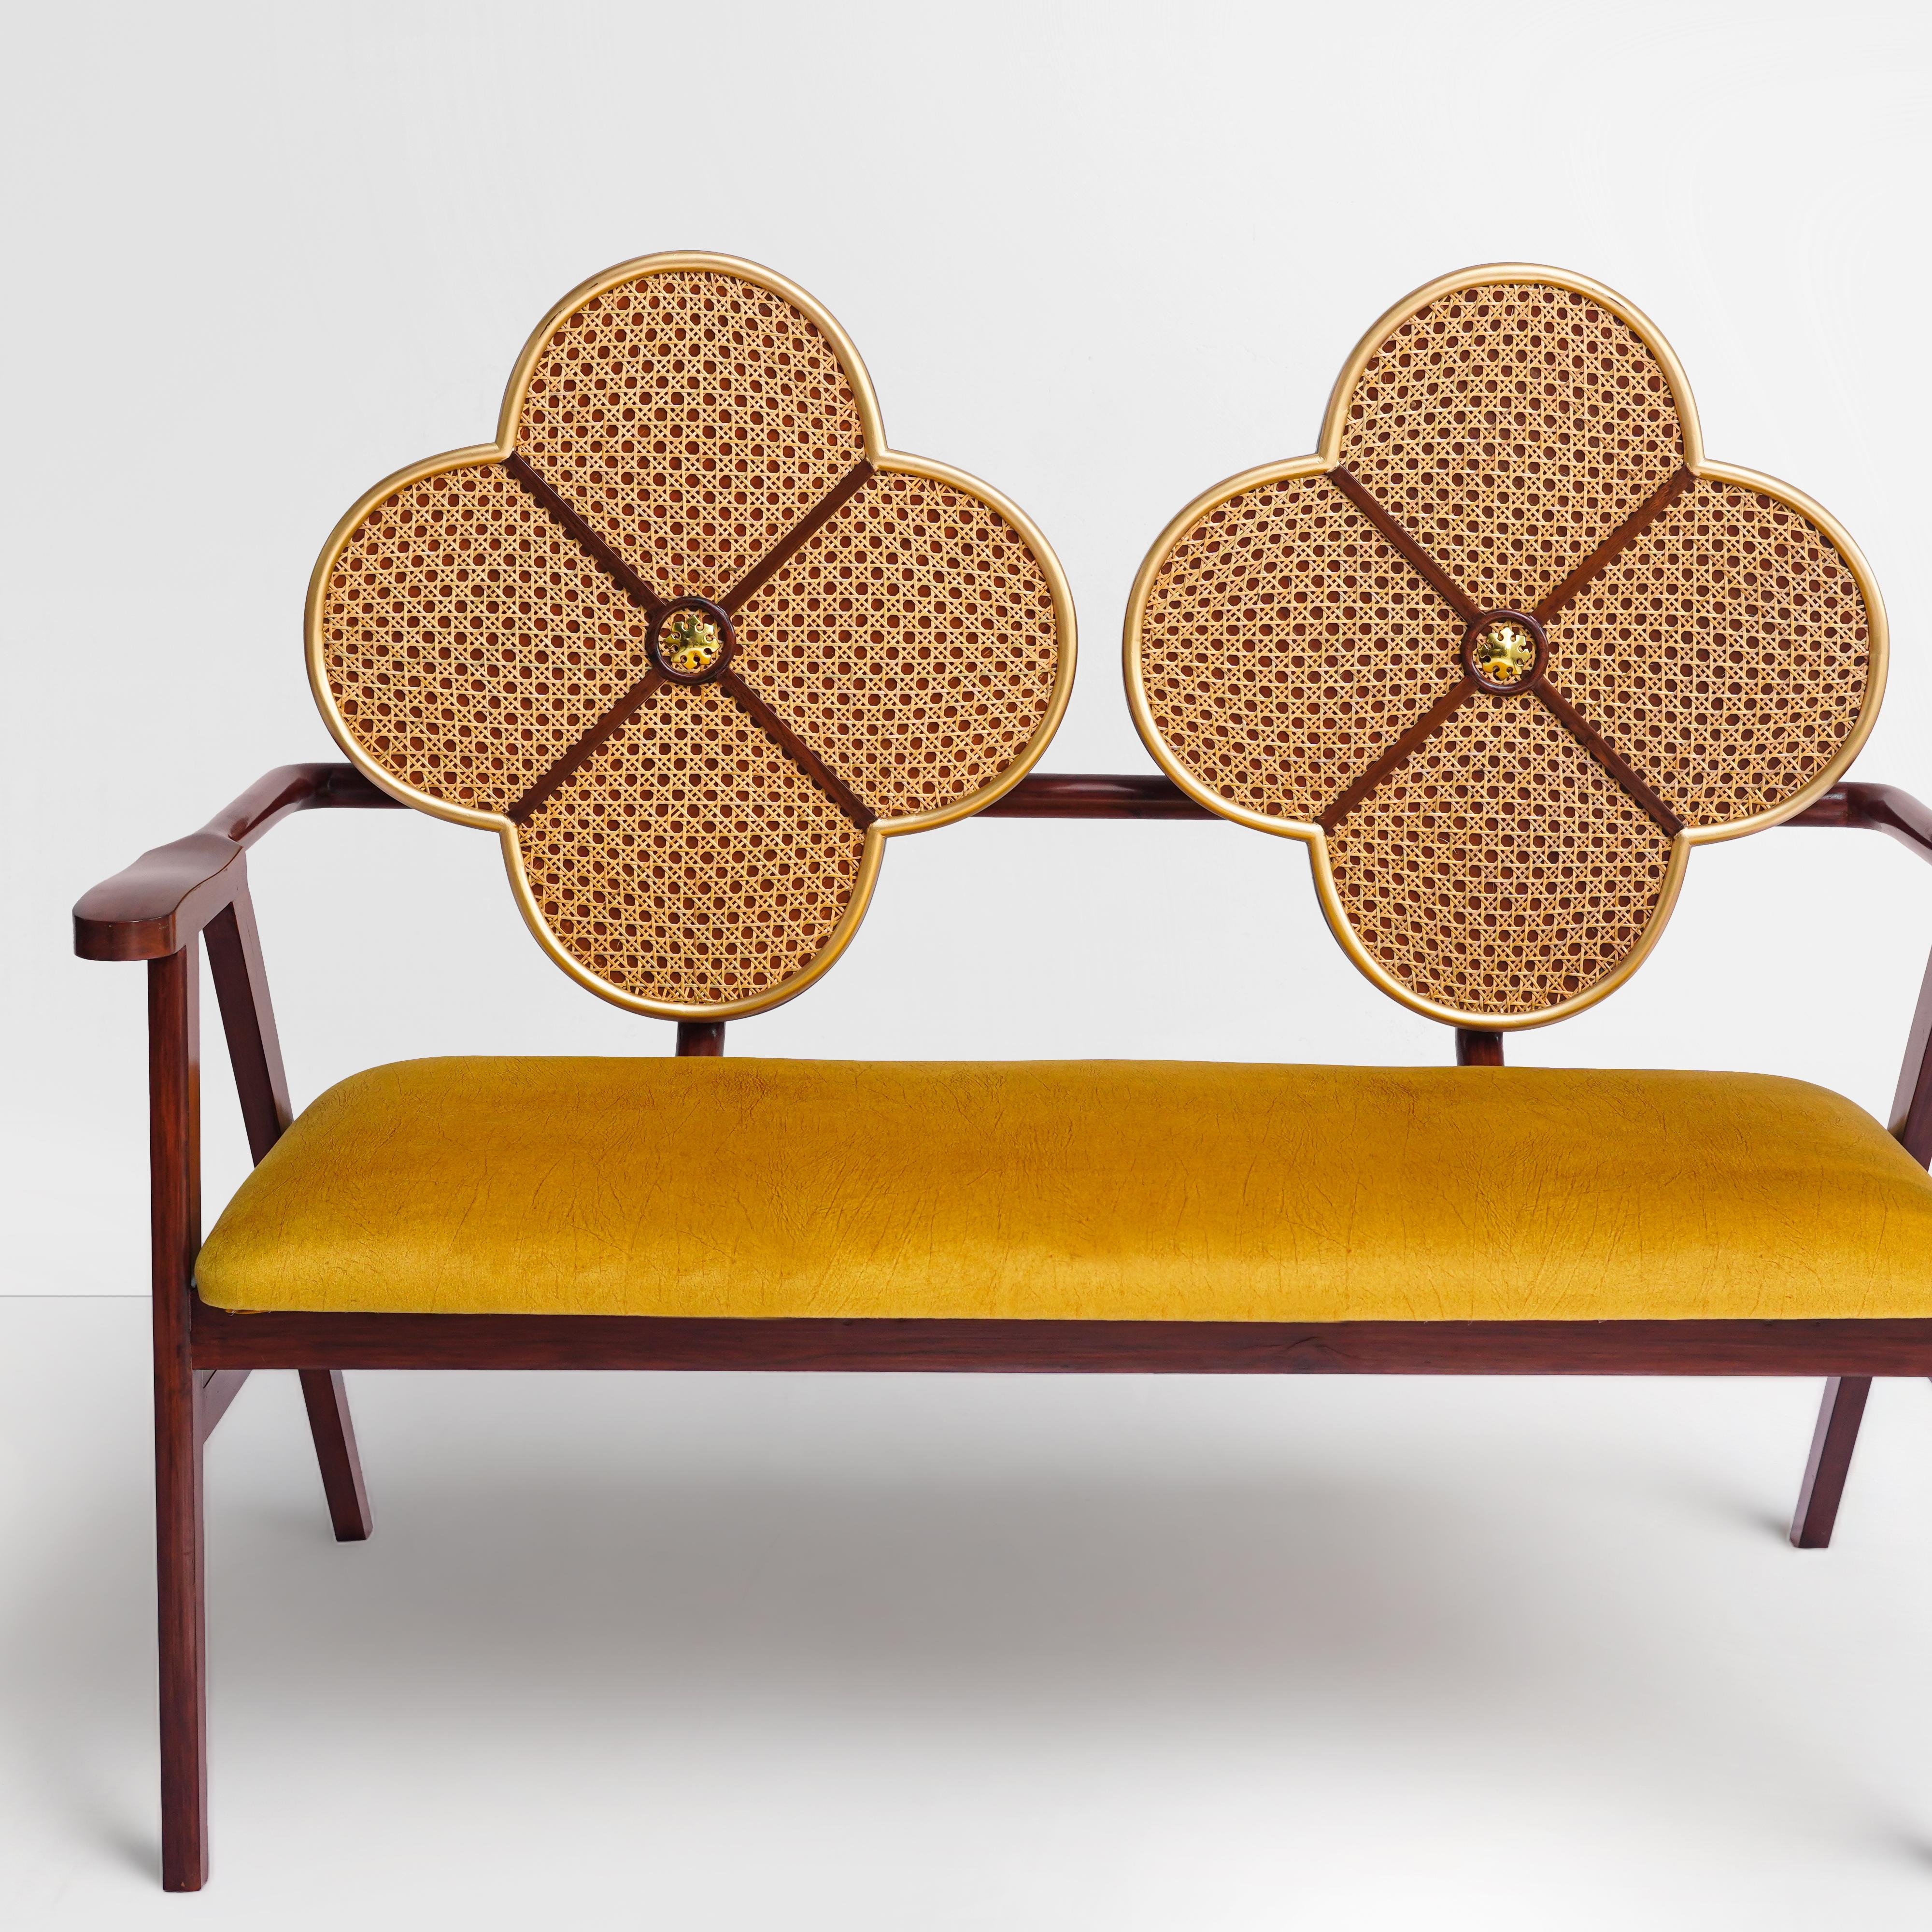 Erhöhen Sie Ihren Raum mit Jugendstileleganz: Das Fleur-Sofa

Tauchen Sie ein in die opulente Welt des Jugendstils mit dem Fleur Settee - ein wahres Meisterwerk, bei dem die Anmut der Natur auf zeitloses Design trifft. Dieser handgefertigte Stuhl